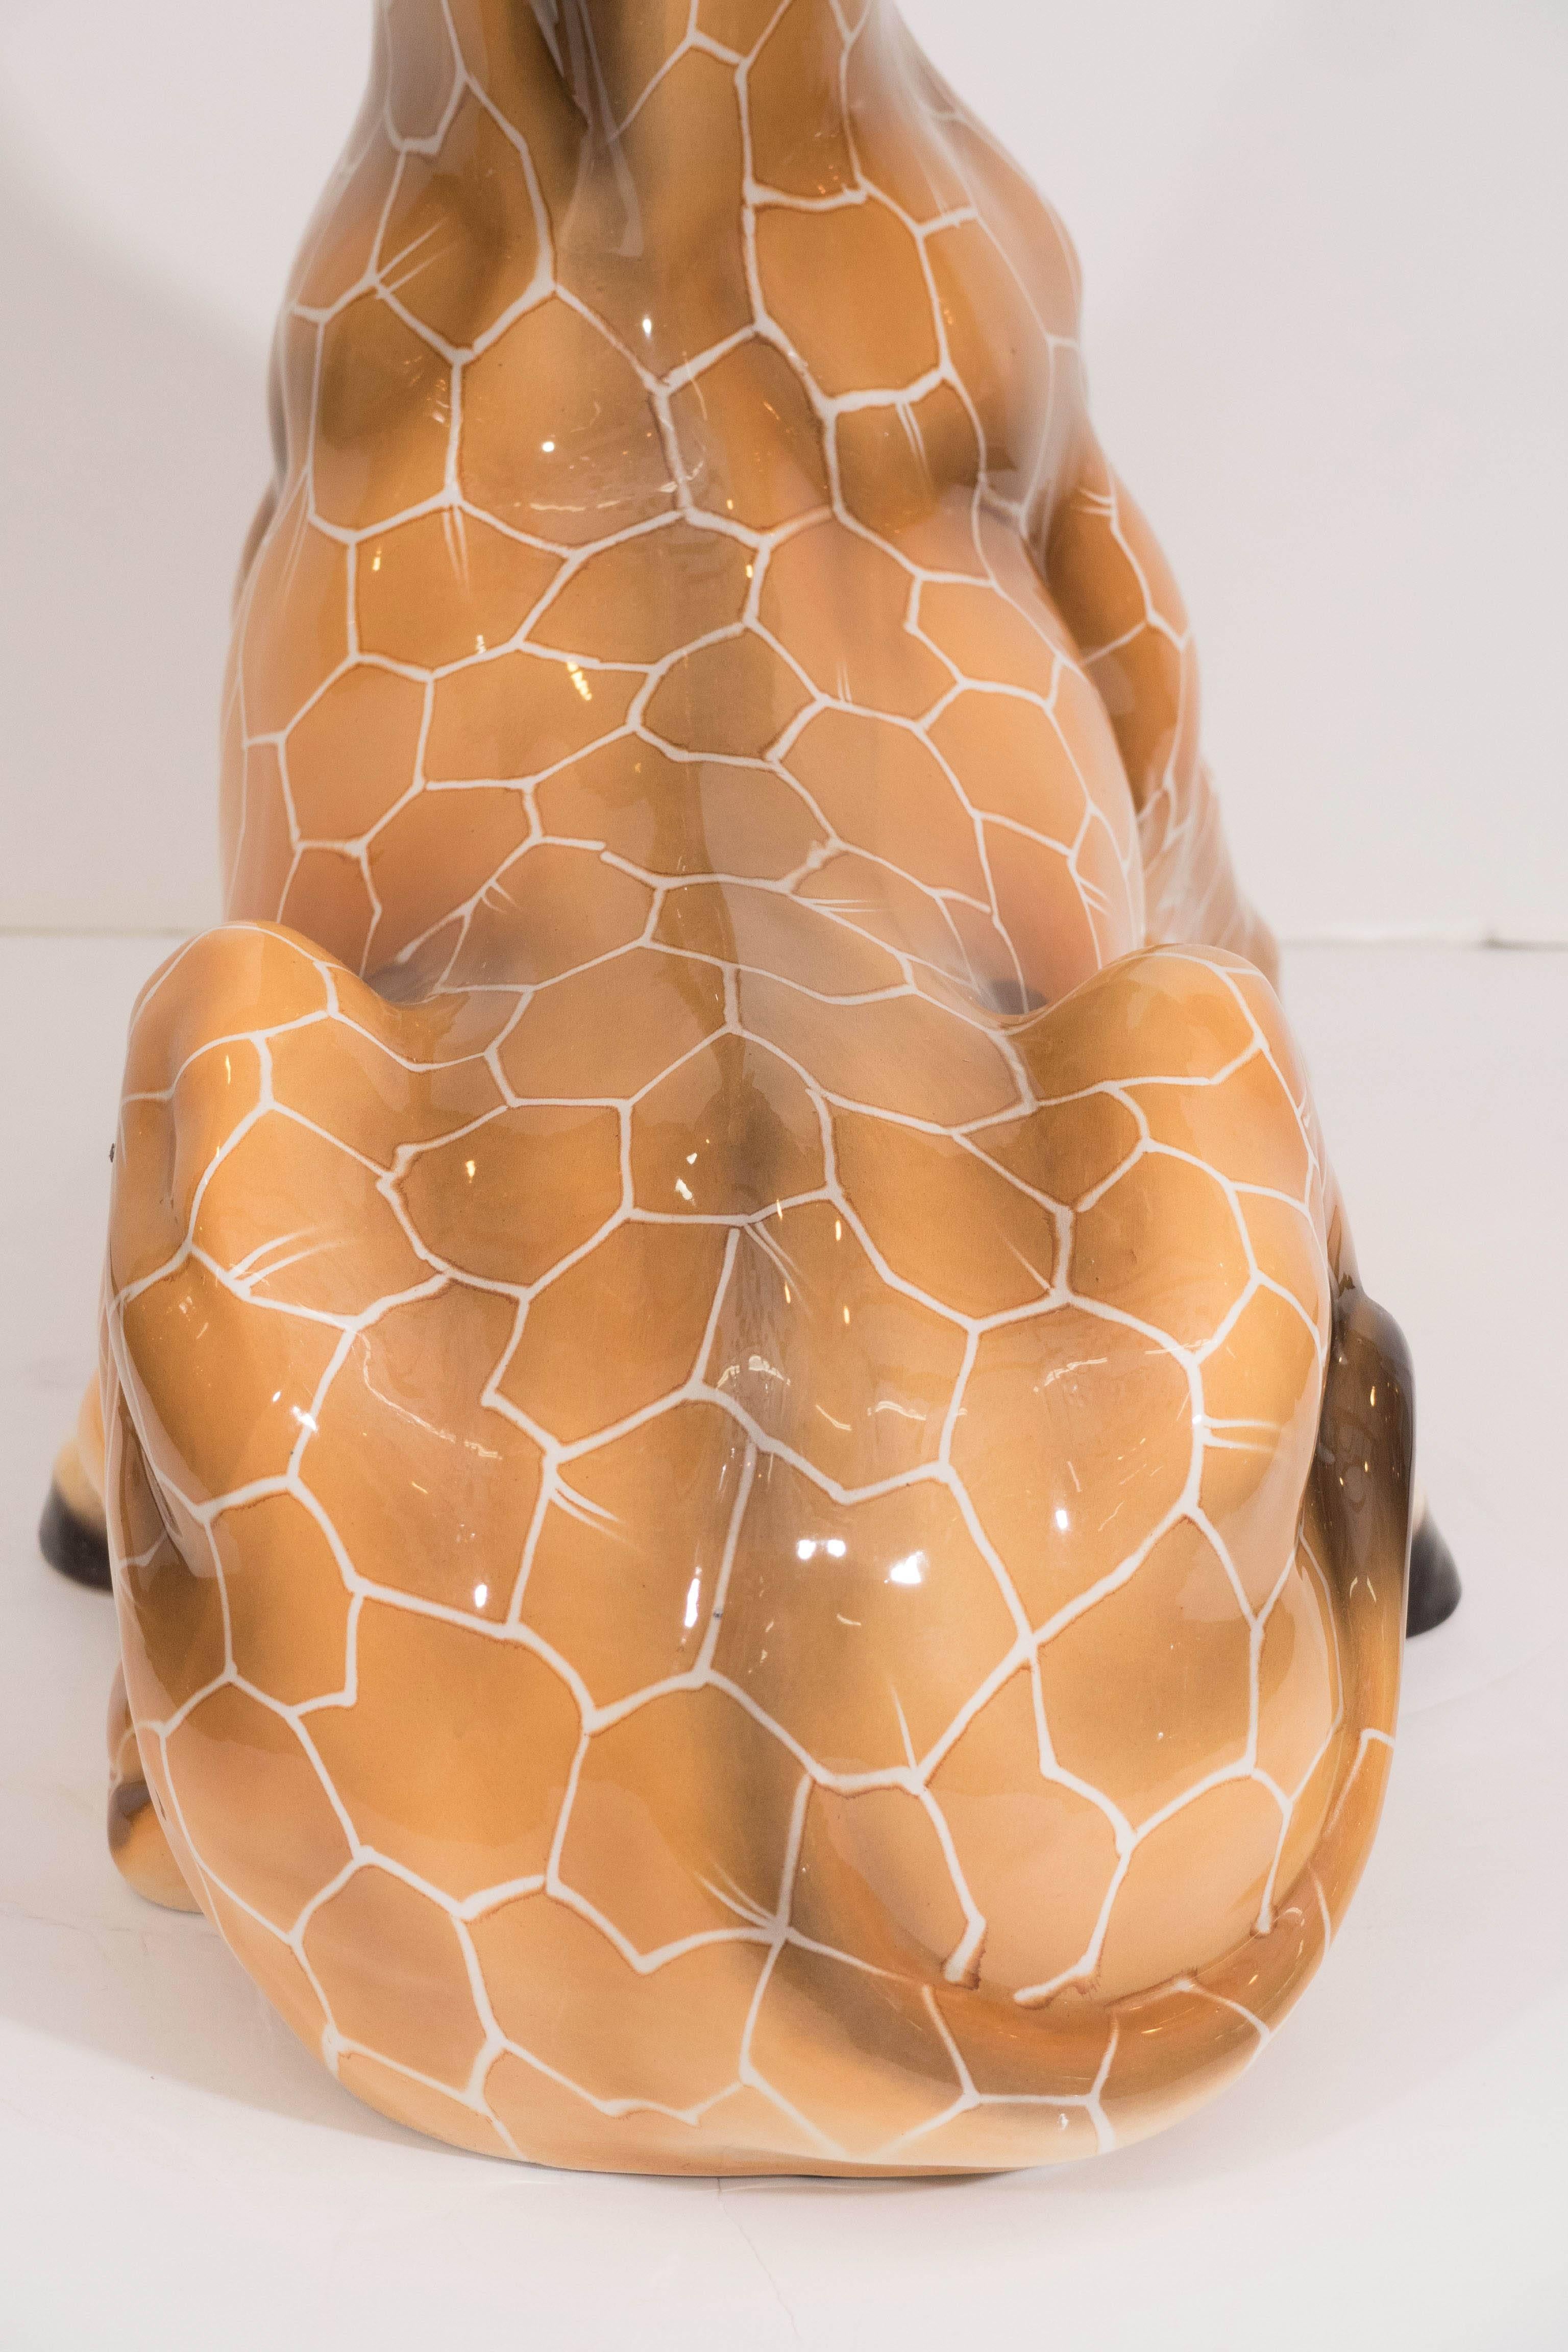 Midcentury Italian Ceramic Giraffe Sculpture 3